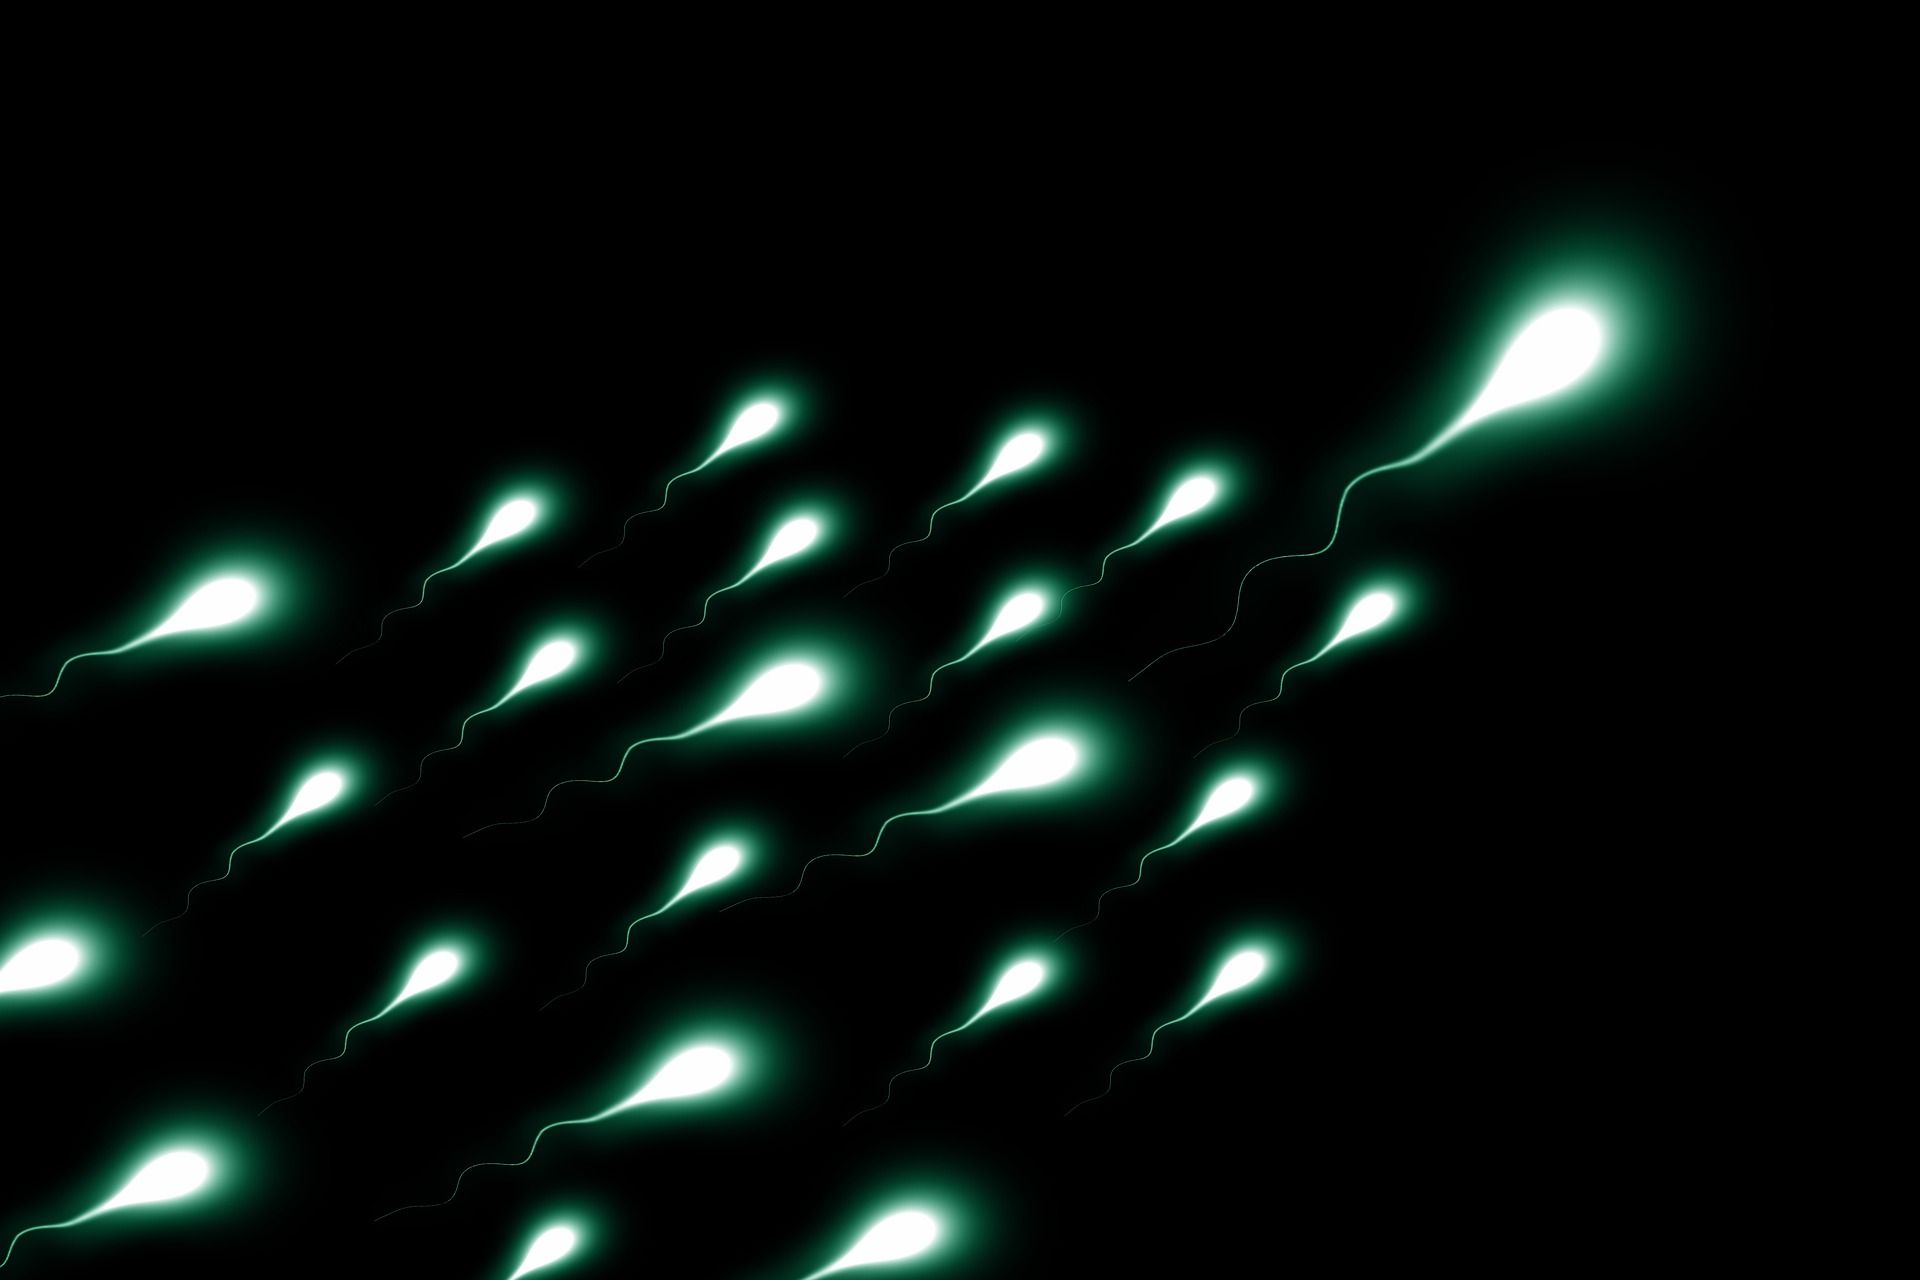 image évoquant des spermatozoïdes faisant la course - Image par Ralph de https://pixabay.com/fr/photos/sperium-sperme-vainqueur-gagnant-2505952/